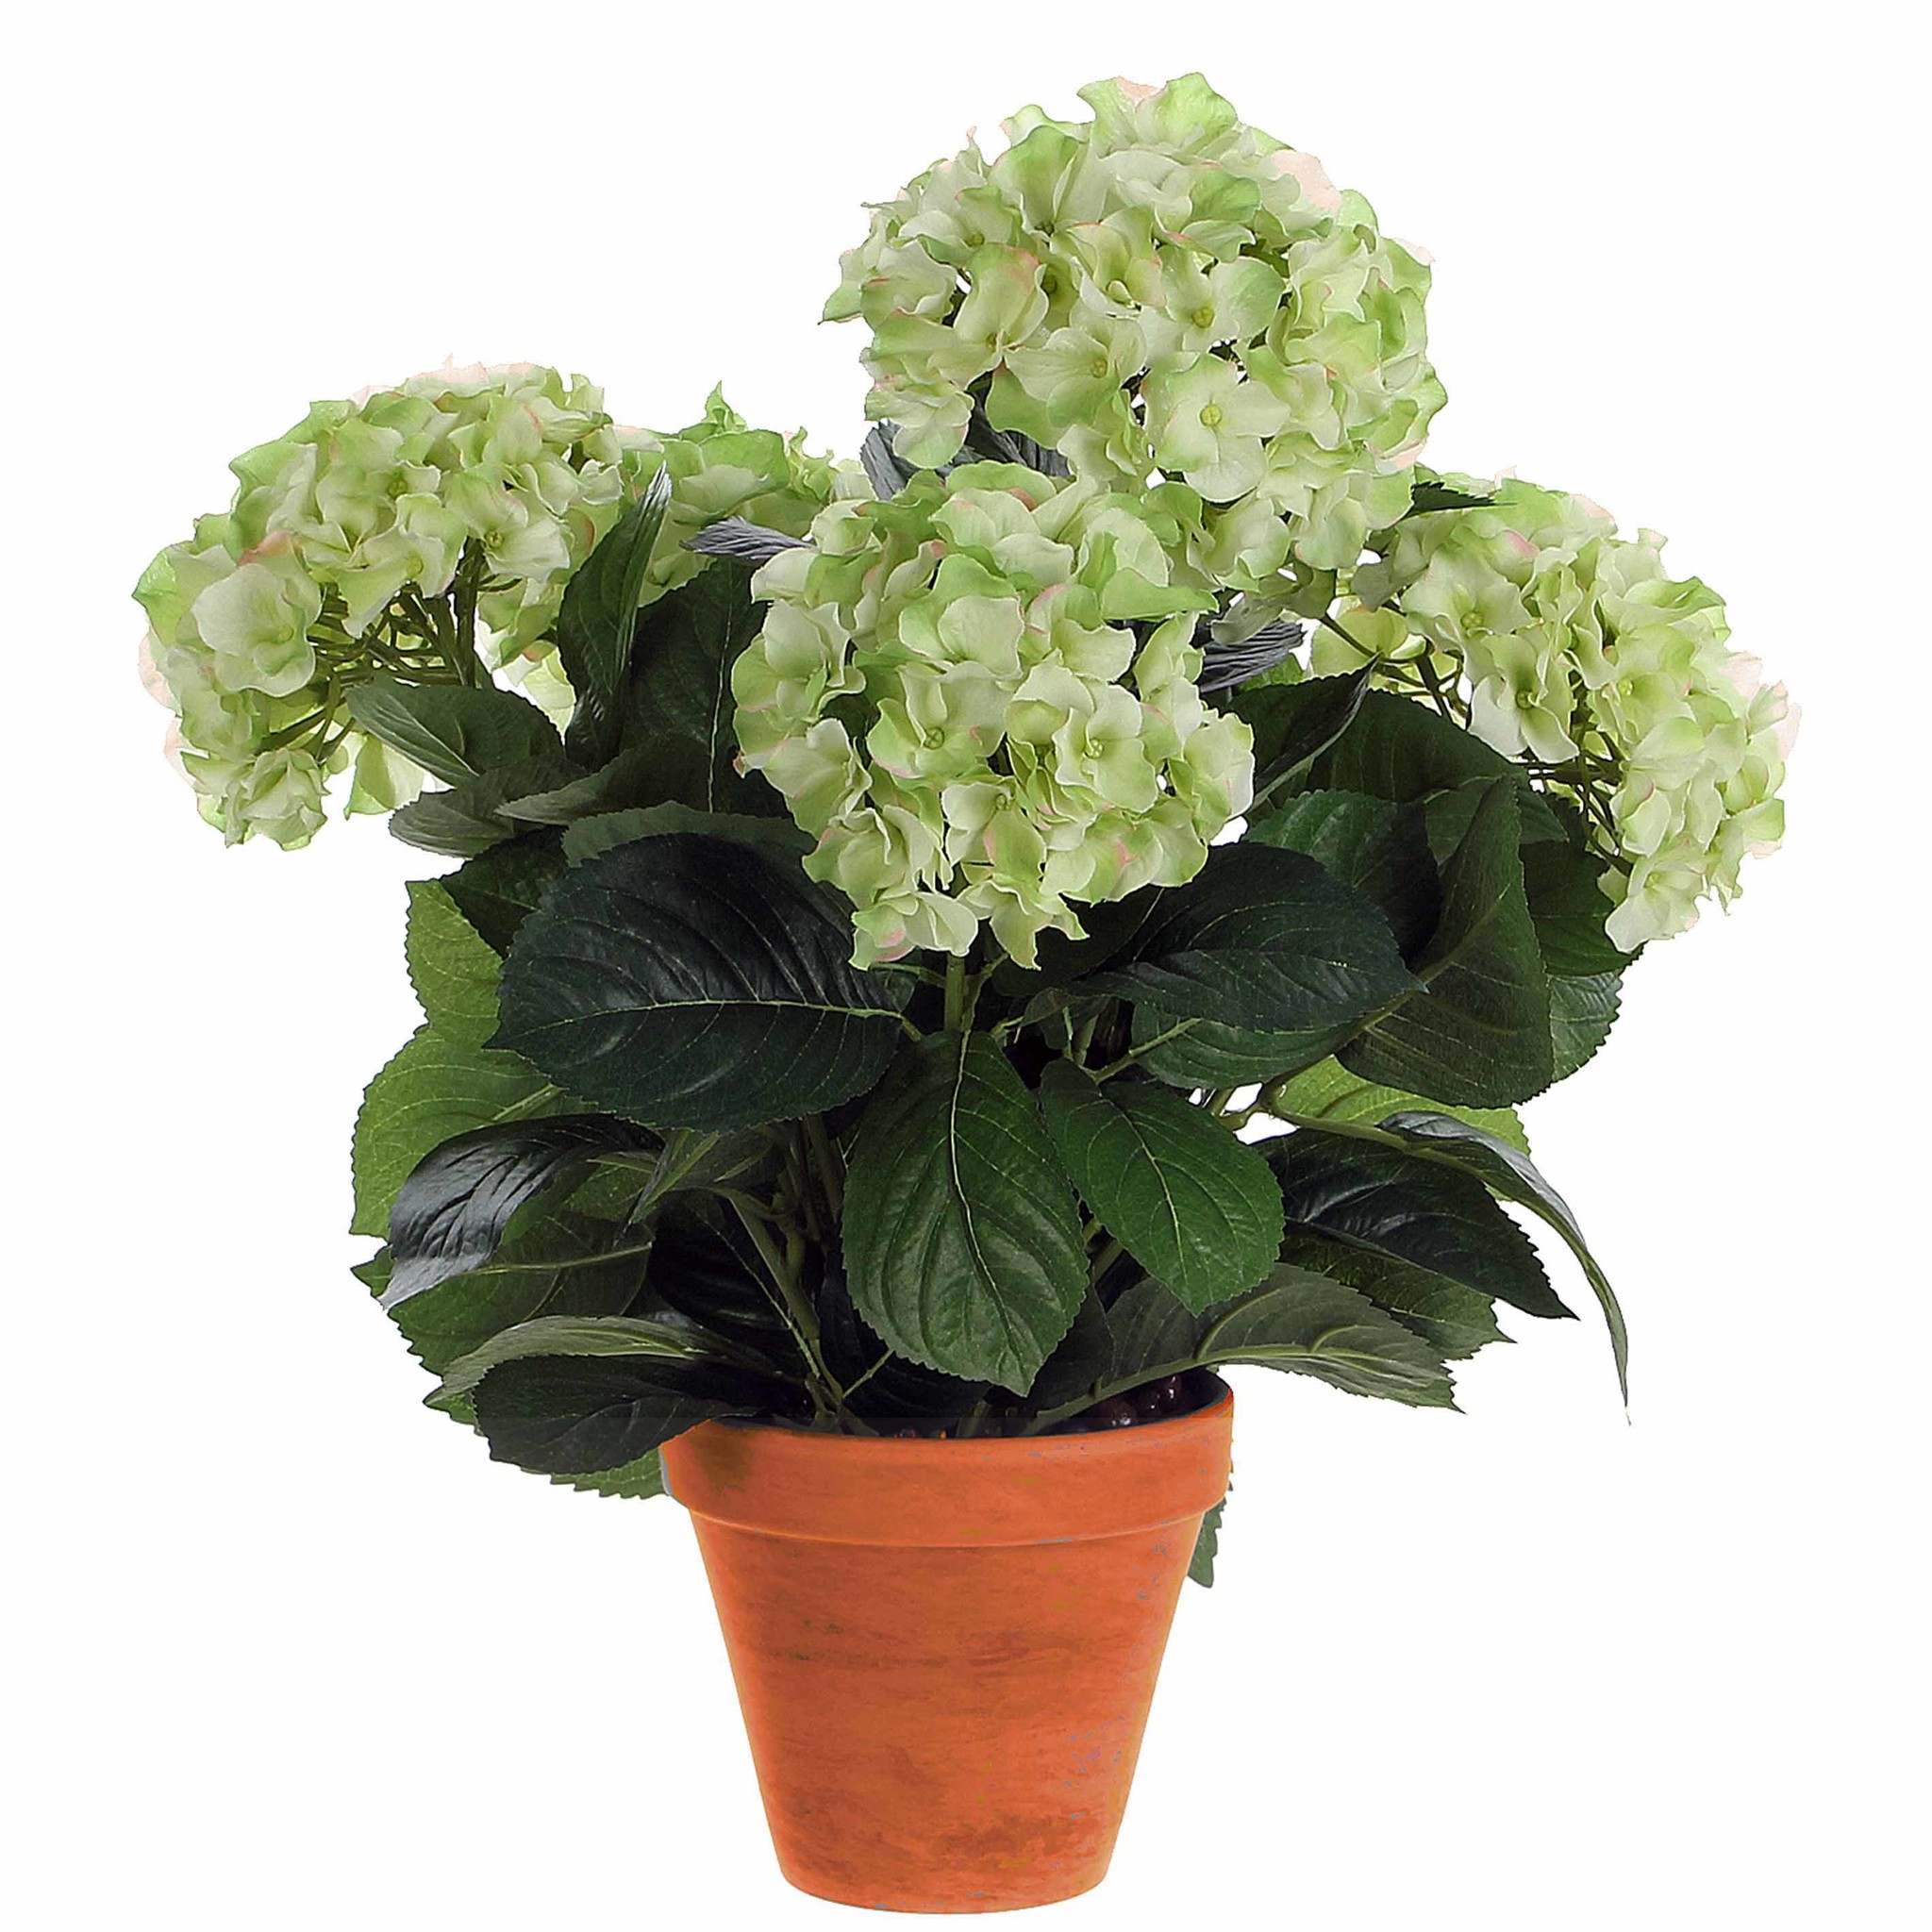 Shop Künstliche - Grün Hortensie Keramiktopf - / Creme New Online - - Day 45cm H Mic Pflanze Plant